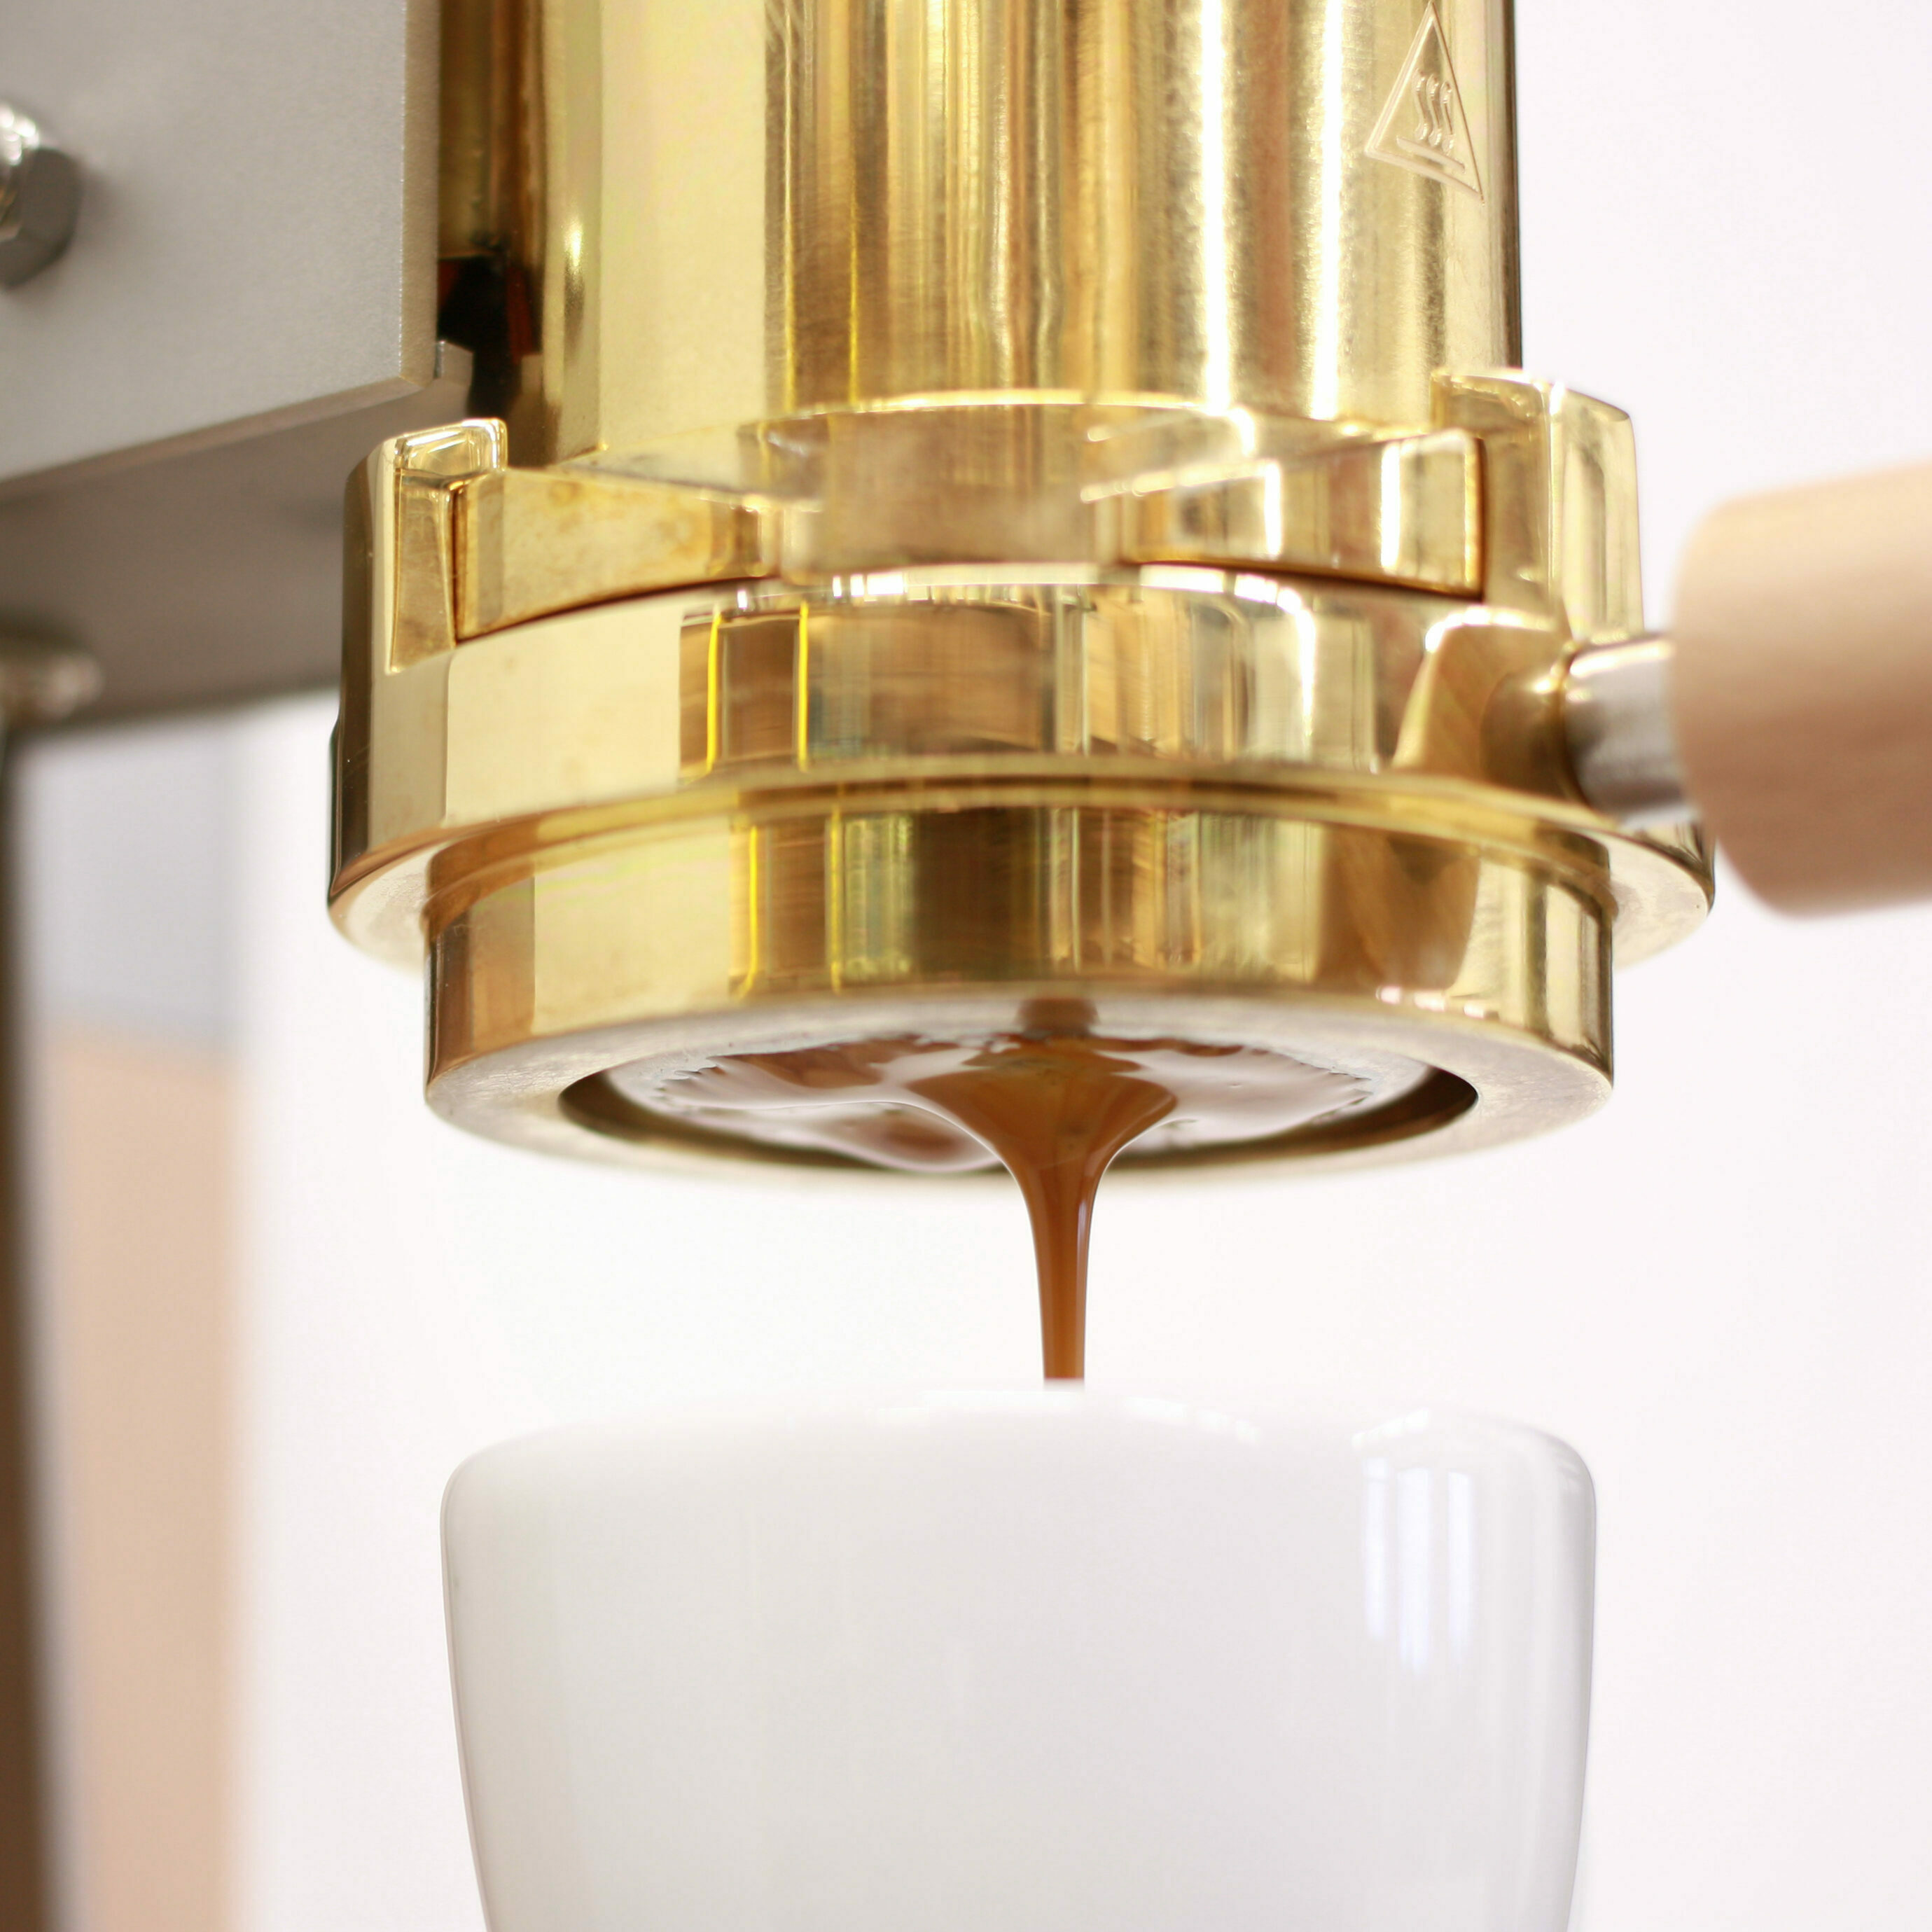 strietman es3 wouter strietman espressomaschine design inneneinrichtung einrichtungsidee